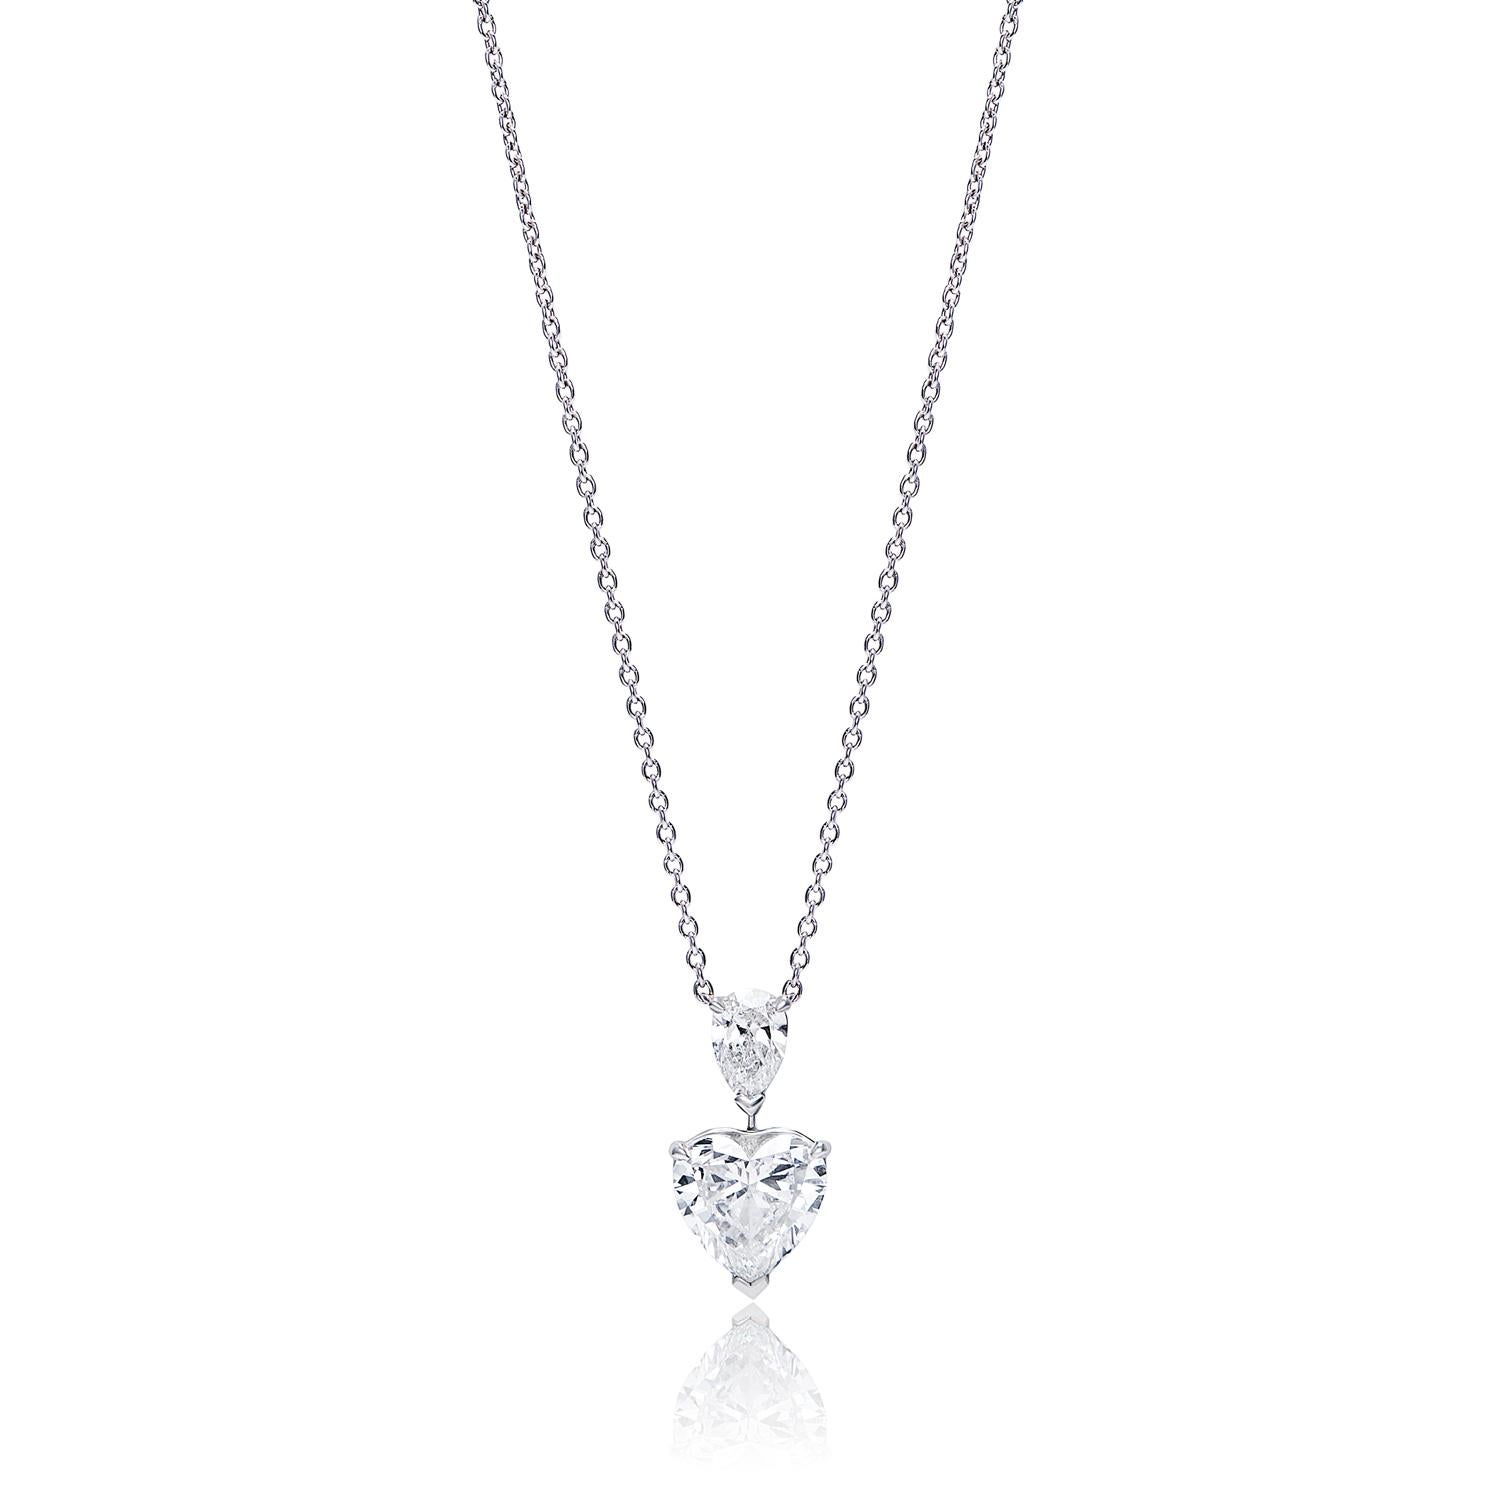 Ce magnifique pendentif est orné d'un diamant D VS1 de 3,25 carats, serti en forme de cœur. Le diamant supérieur est un D SI1 de 0,52 carat, serti en forme de poire. Ces diamants sont sertis dans des chaînes en platine et constituent le complément